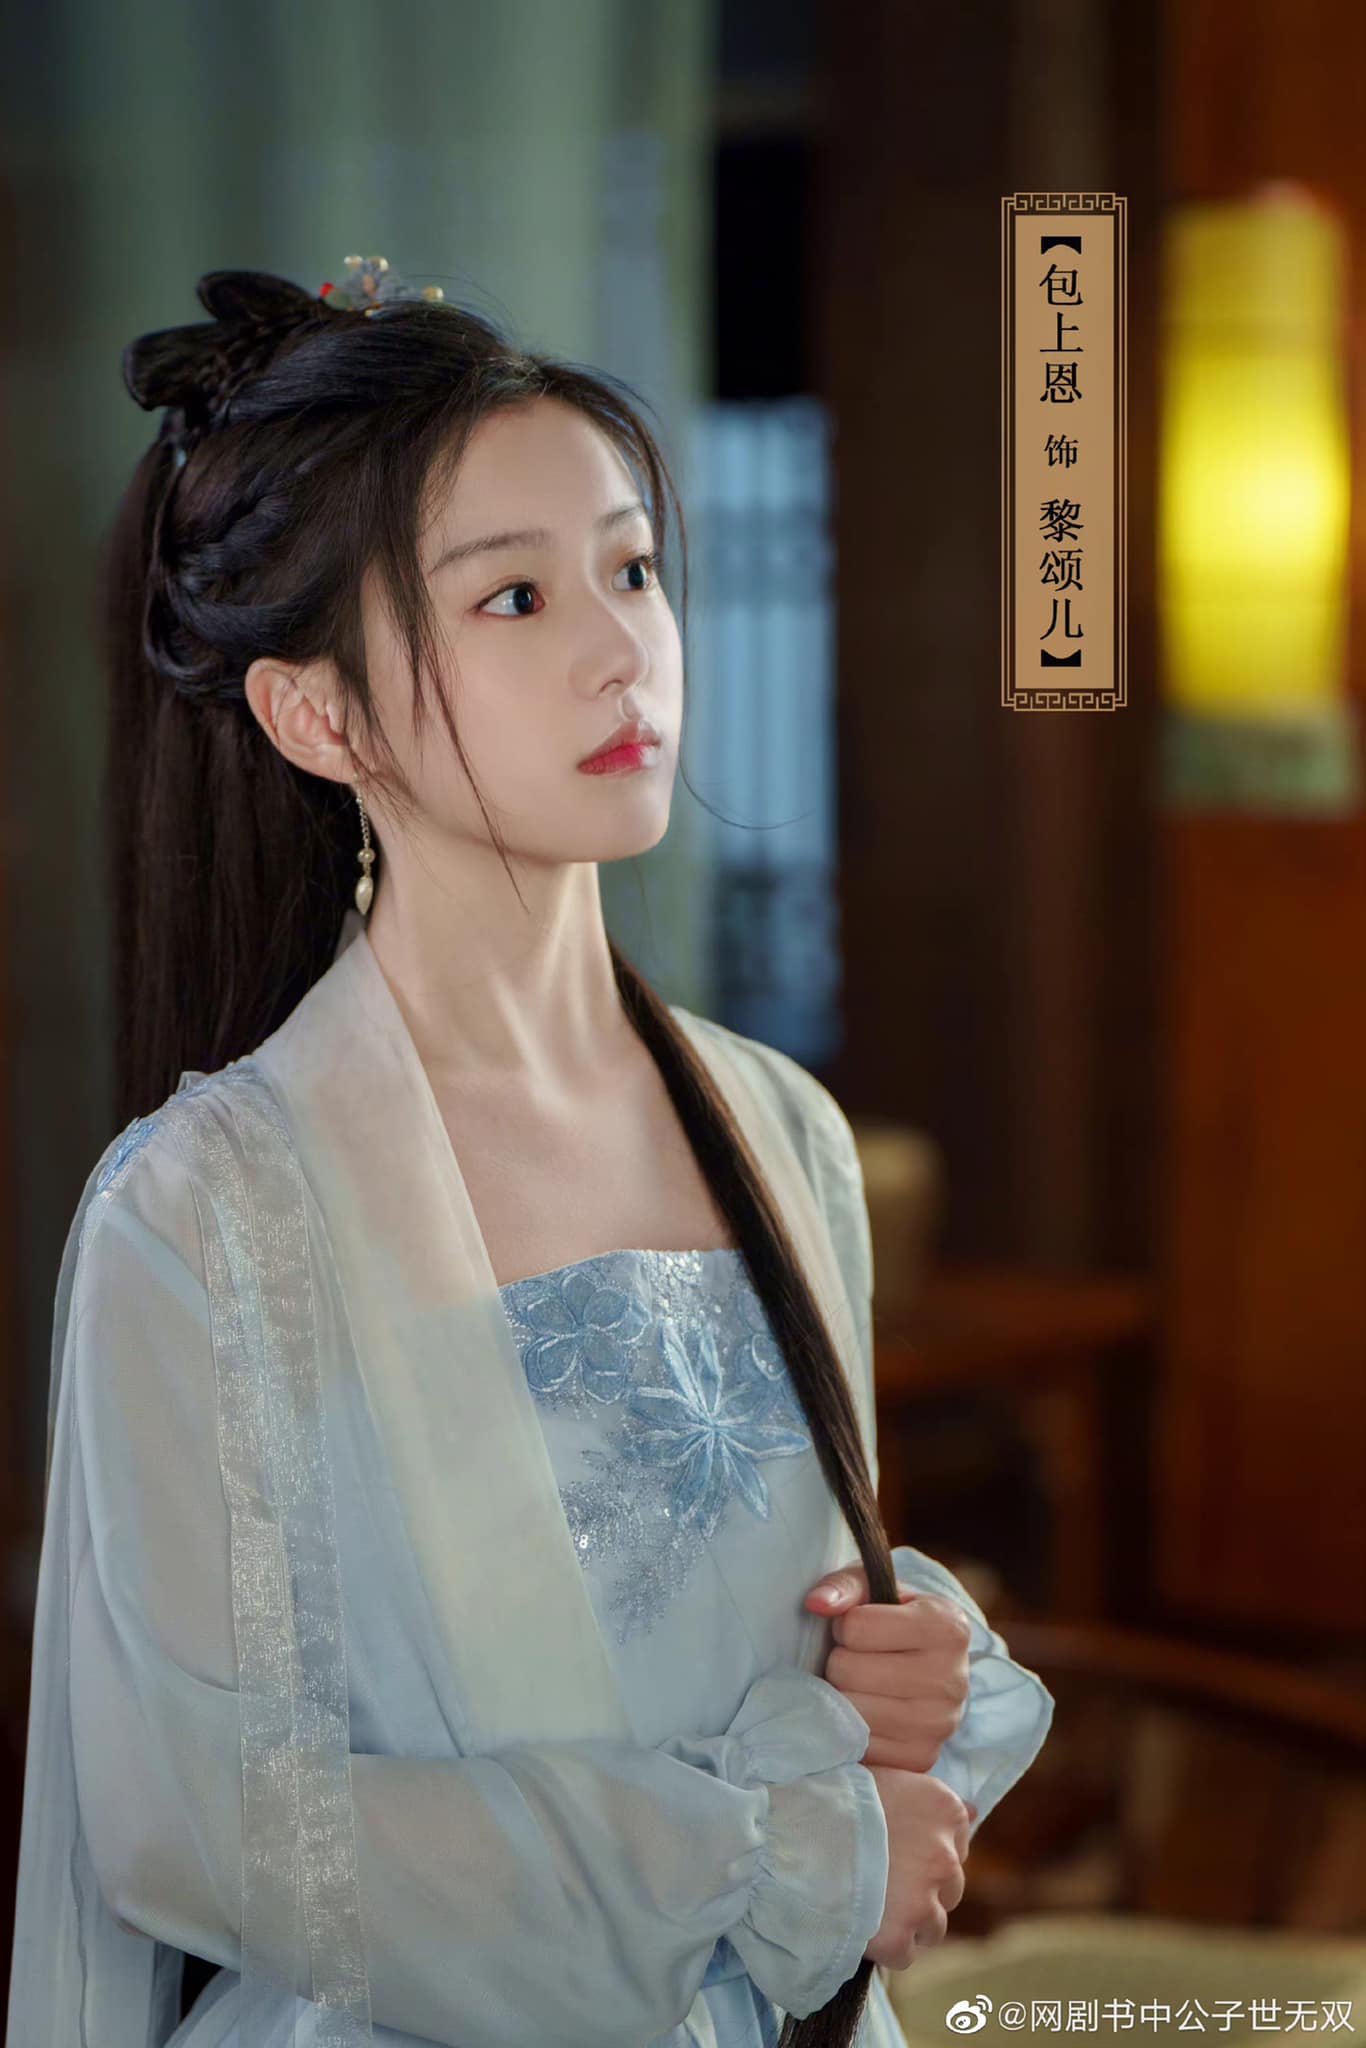 Bao Thượng Ân là gương mặt mới của làng phim, tác phẩm đầu tay của cô là "Diệu thủ", quay năm 2021. Hồi tháng 6, Bao Thượng Ân ra mắt phim "Hoa chiêu thu nguyệt dạ", với vai chính Lý Táp Táp - cô gái giỏi chơi đàn tì bà